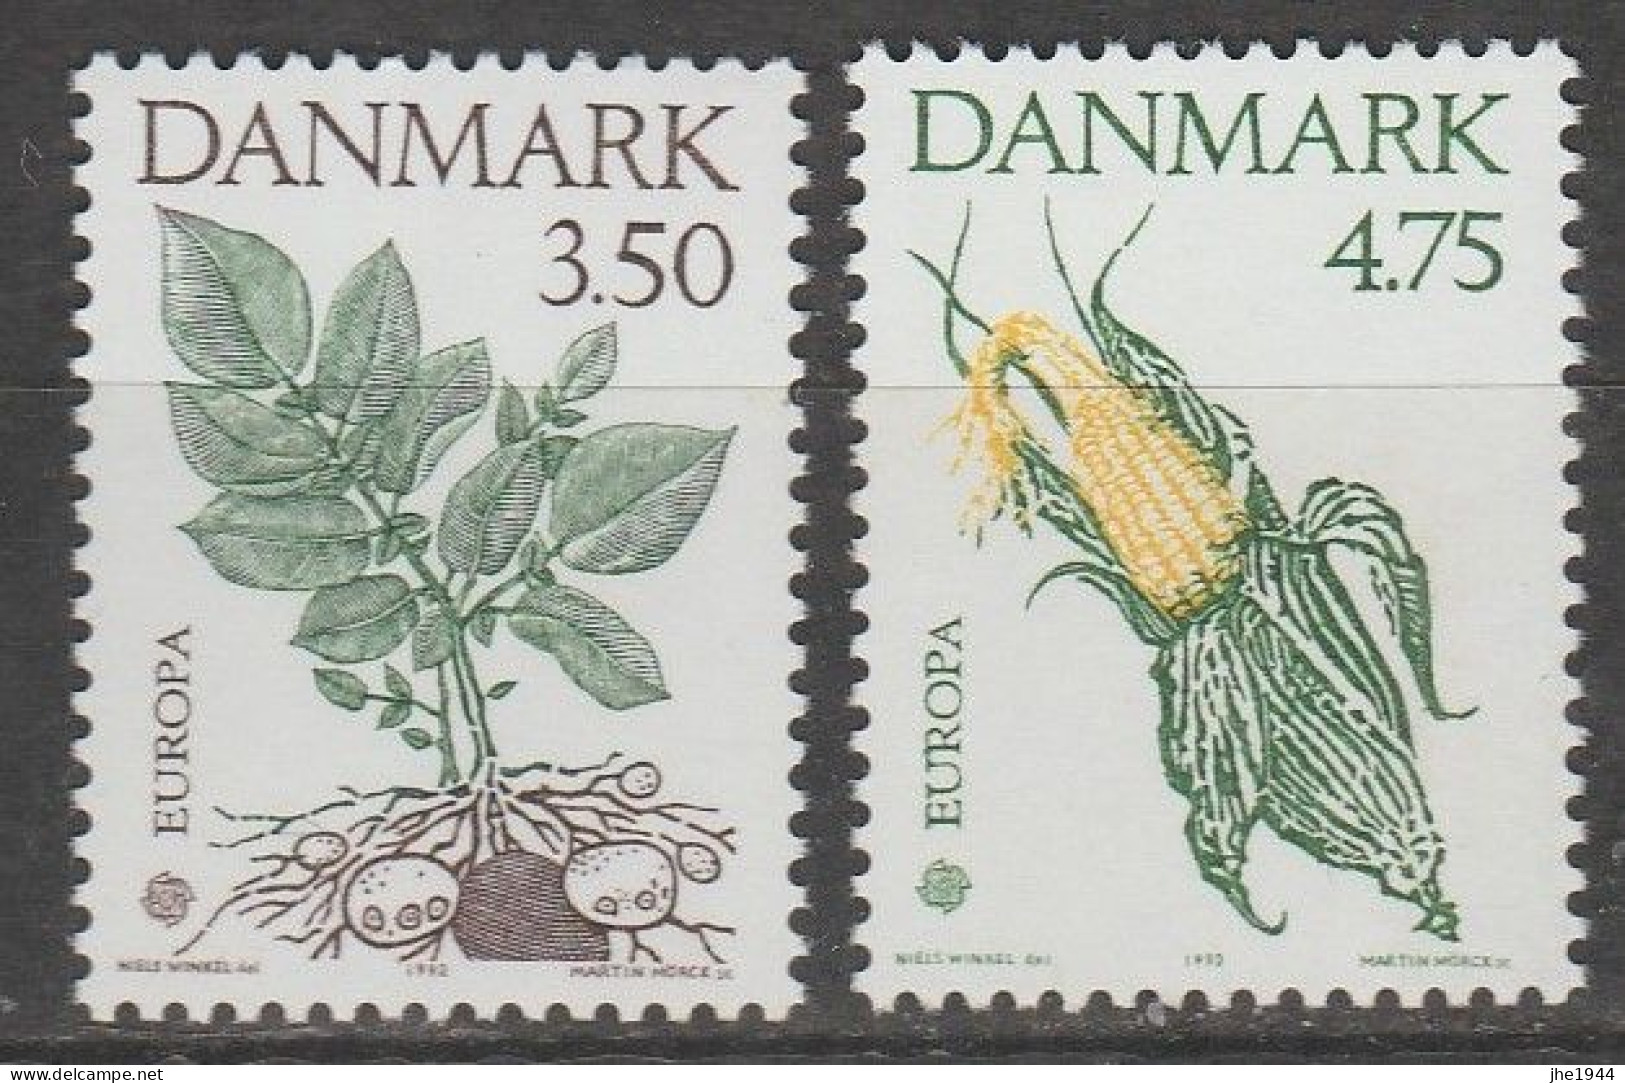 Danemark Europa 1992 N° 1028/ 1029 ** Decouverte Amerique - 1992